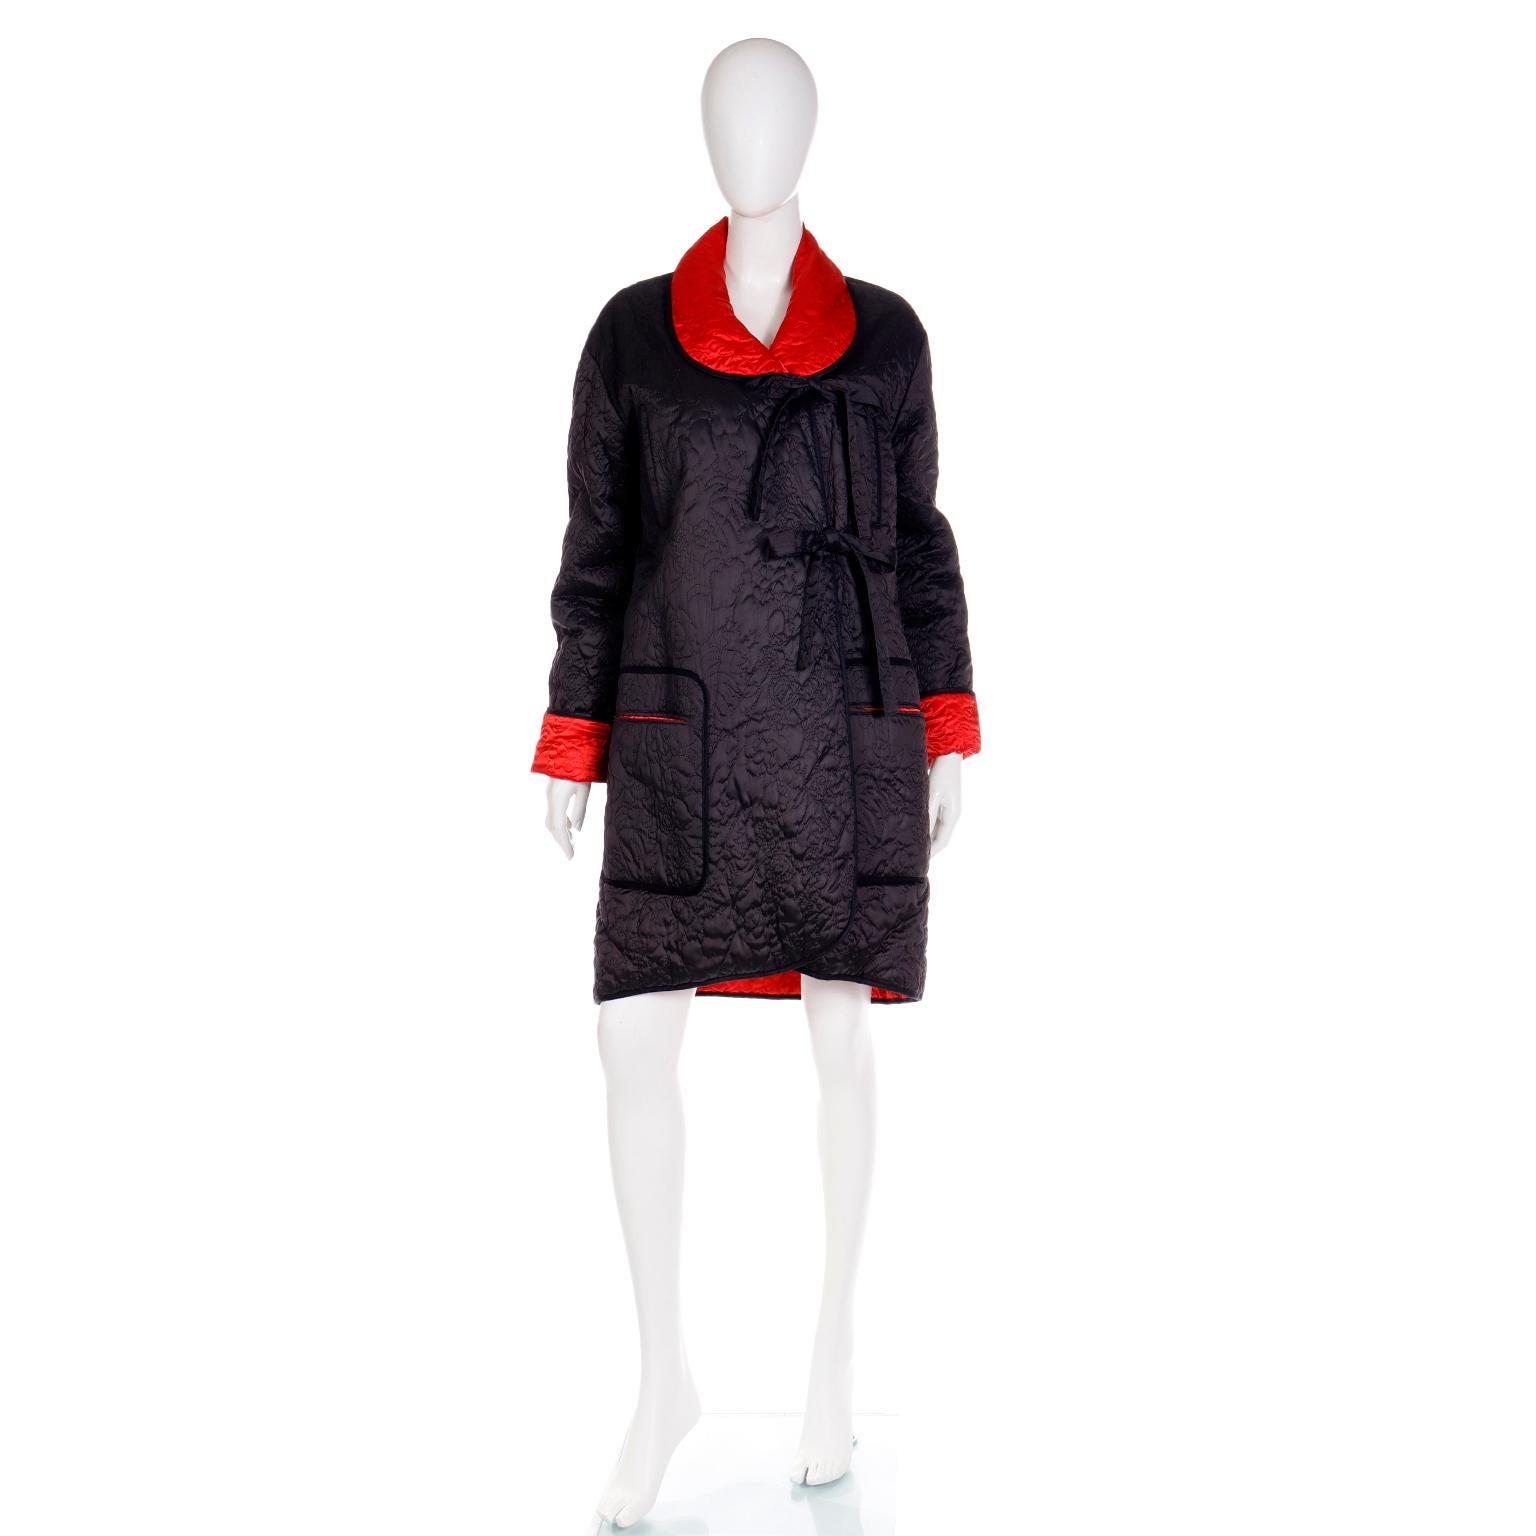 Voici une veste matelassée réversible rouge et noire vintage de Sonia Rykiel avec une capuche. Nous adorons les pièces vintage de Sonia Byne, une créatrice qui a eu une telle influence. Elle a été la première créatrice à placer des coutures à